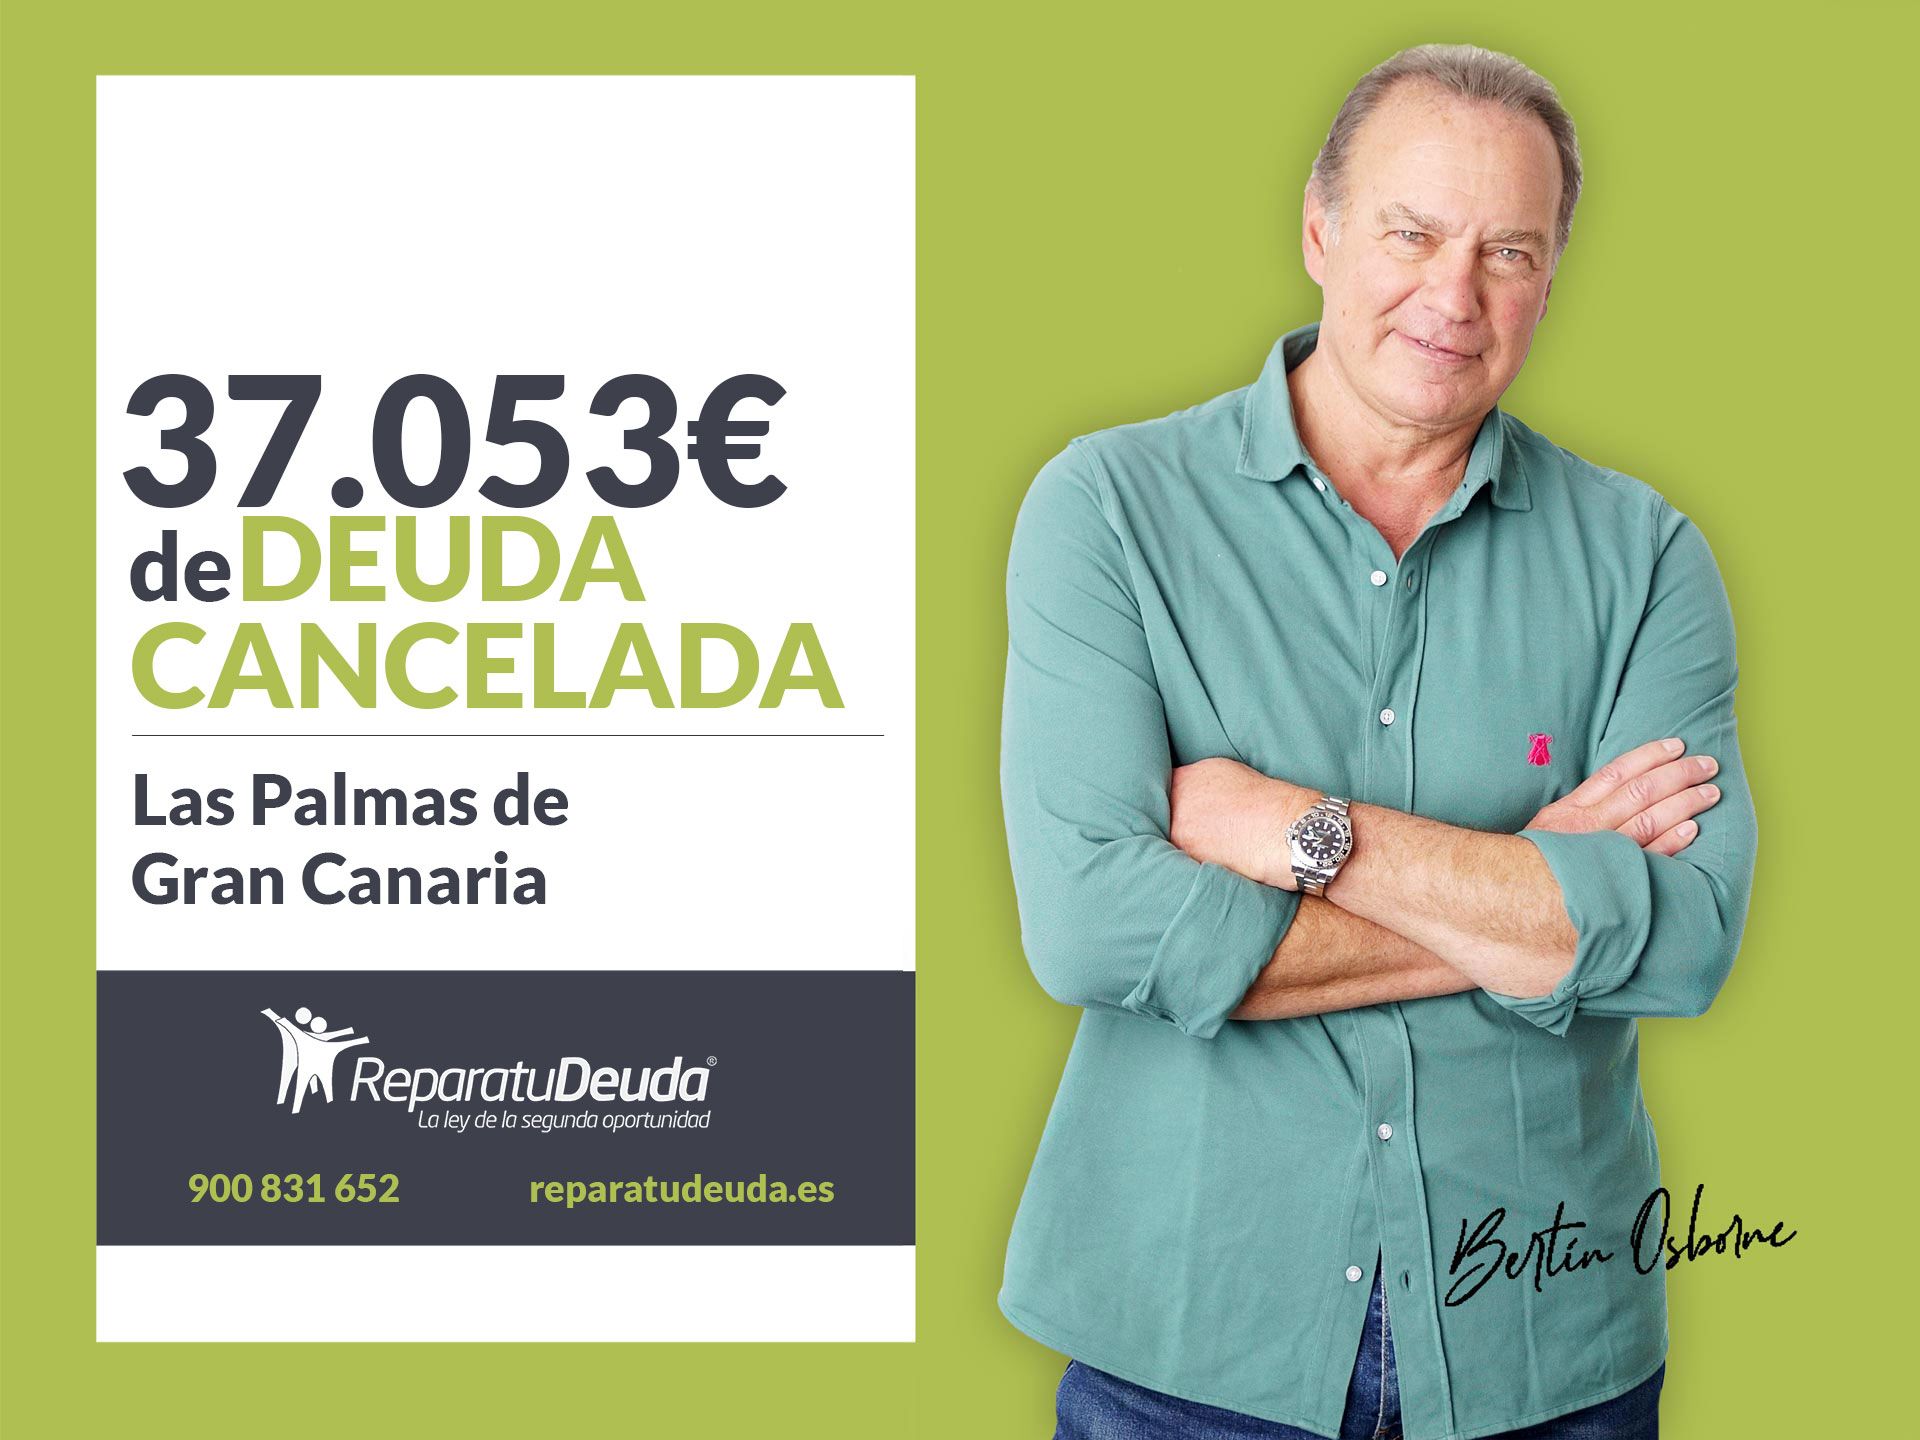 Repara tu Deuda cancela 37.053 ? en Las Palmas de Gran Canaria (Canarias) con la Ley de Segunda Oportunidad